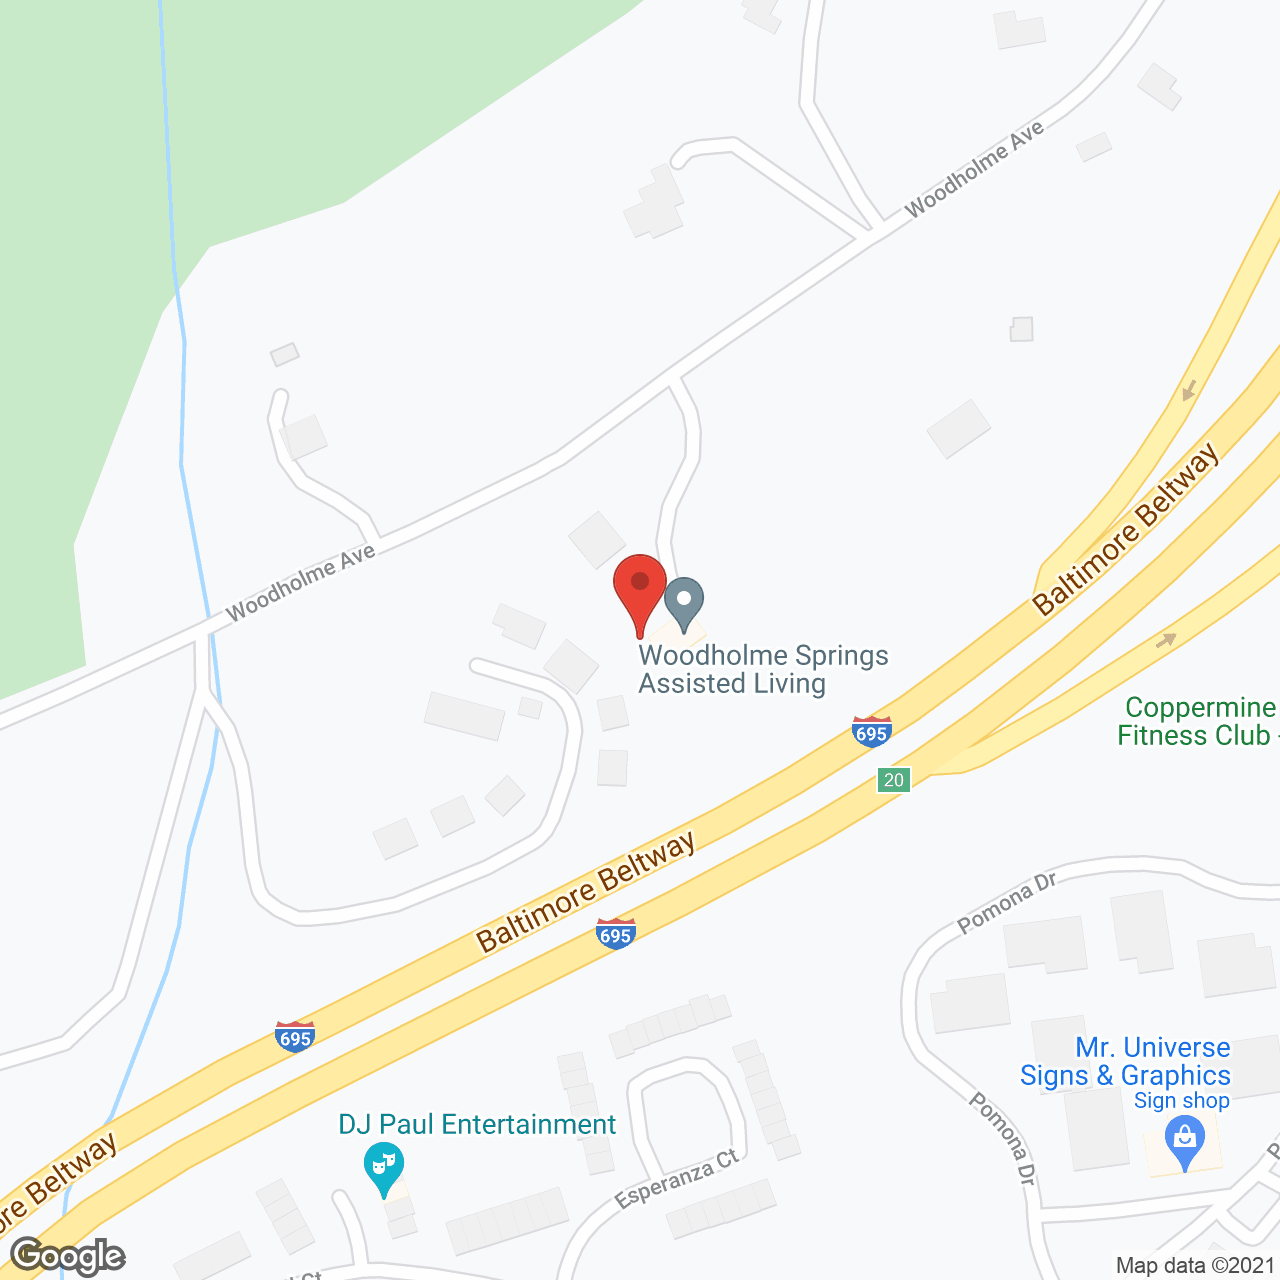 Woodholme Springs in google map